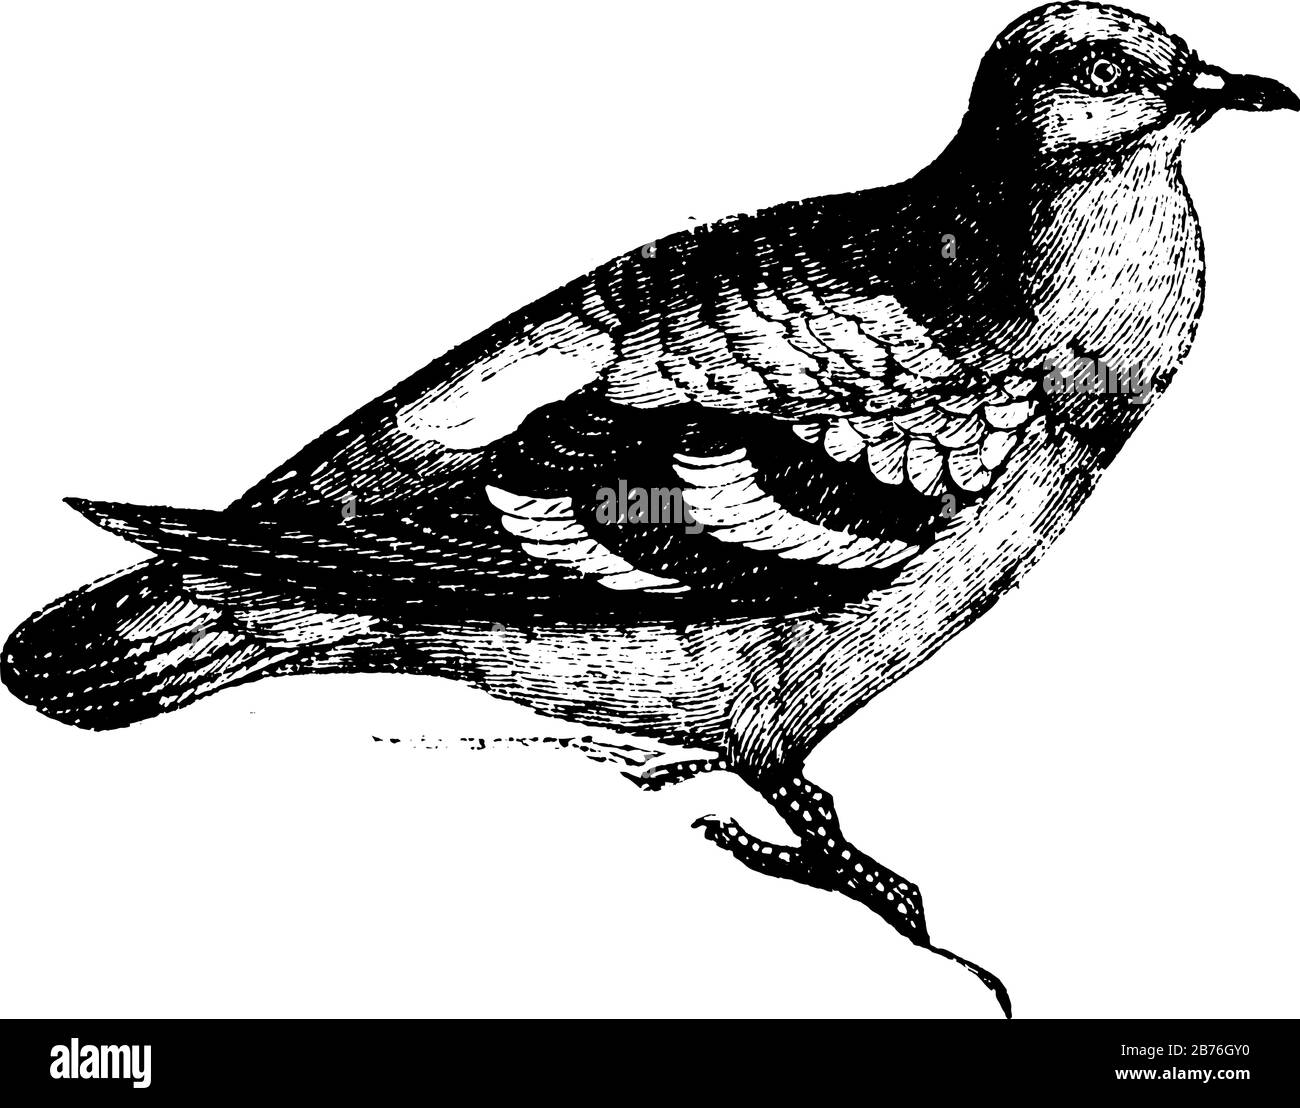 Le pigeon de bois est gris clair avec des reflets de couleur bleu et rose, un dessin de ligne vintage ou une illustration de gravure. Illustration de Vecteur